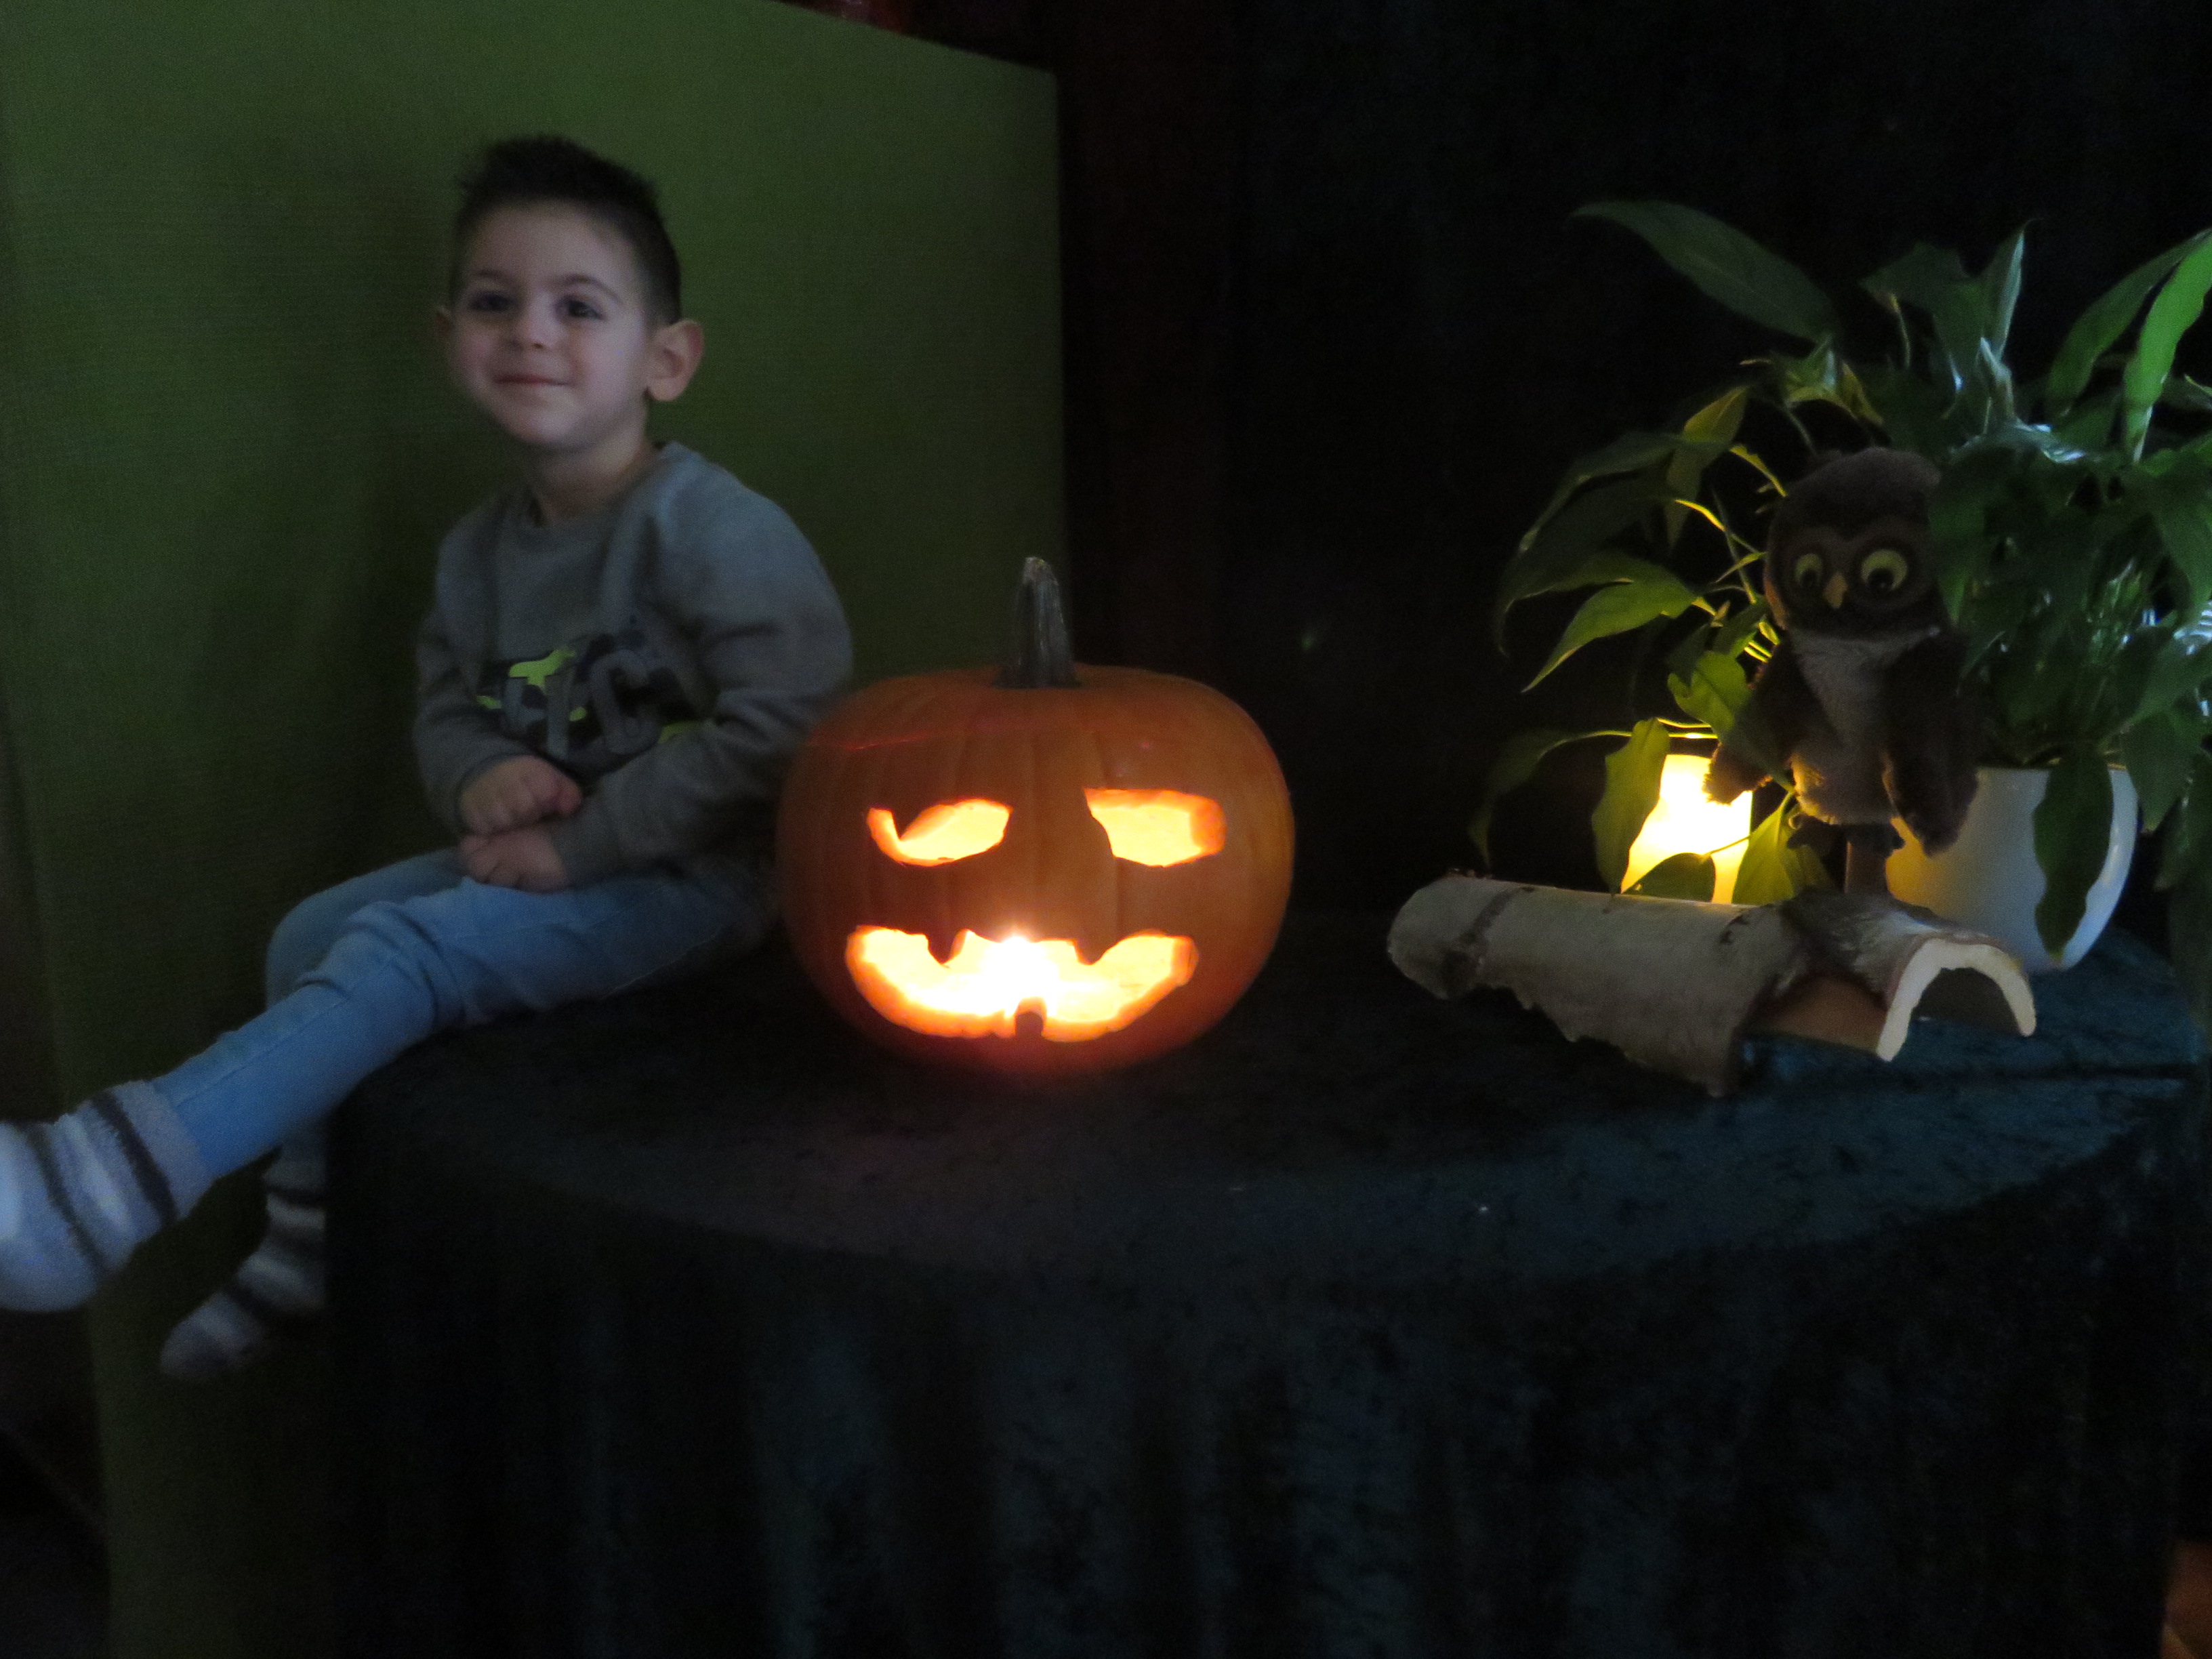 eefd_Bild 9 - ...Und schwupptiwupp, unser Halloween-Kuerbis ist fertig und mit der Kerze sieht er im Dunkeln richtig gruselig aus.....JPG